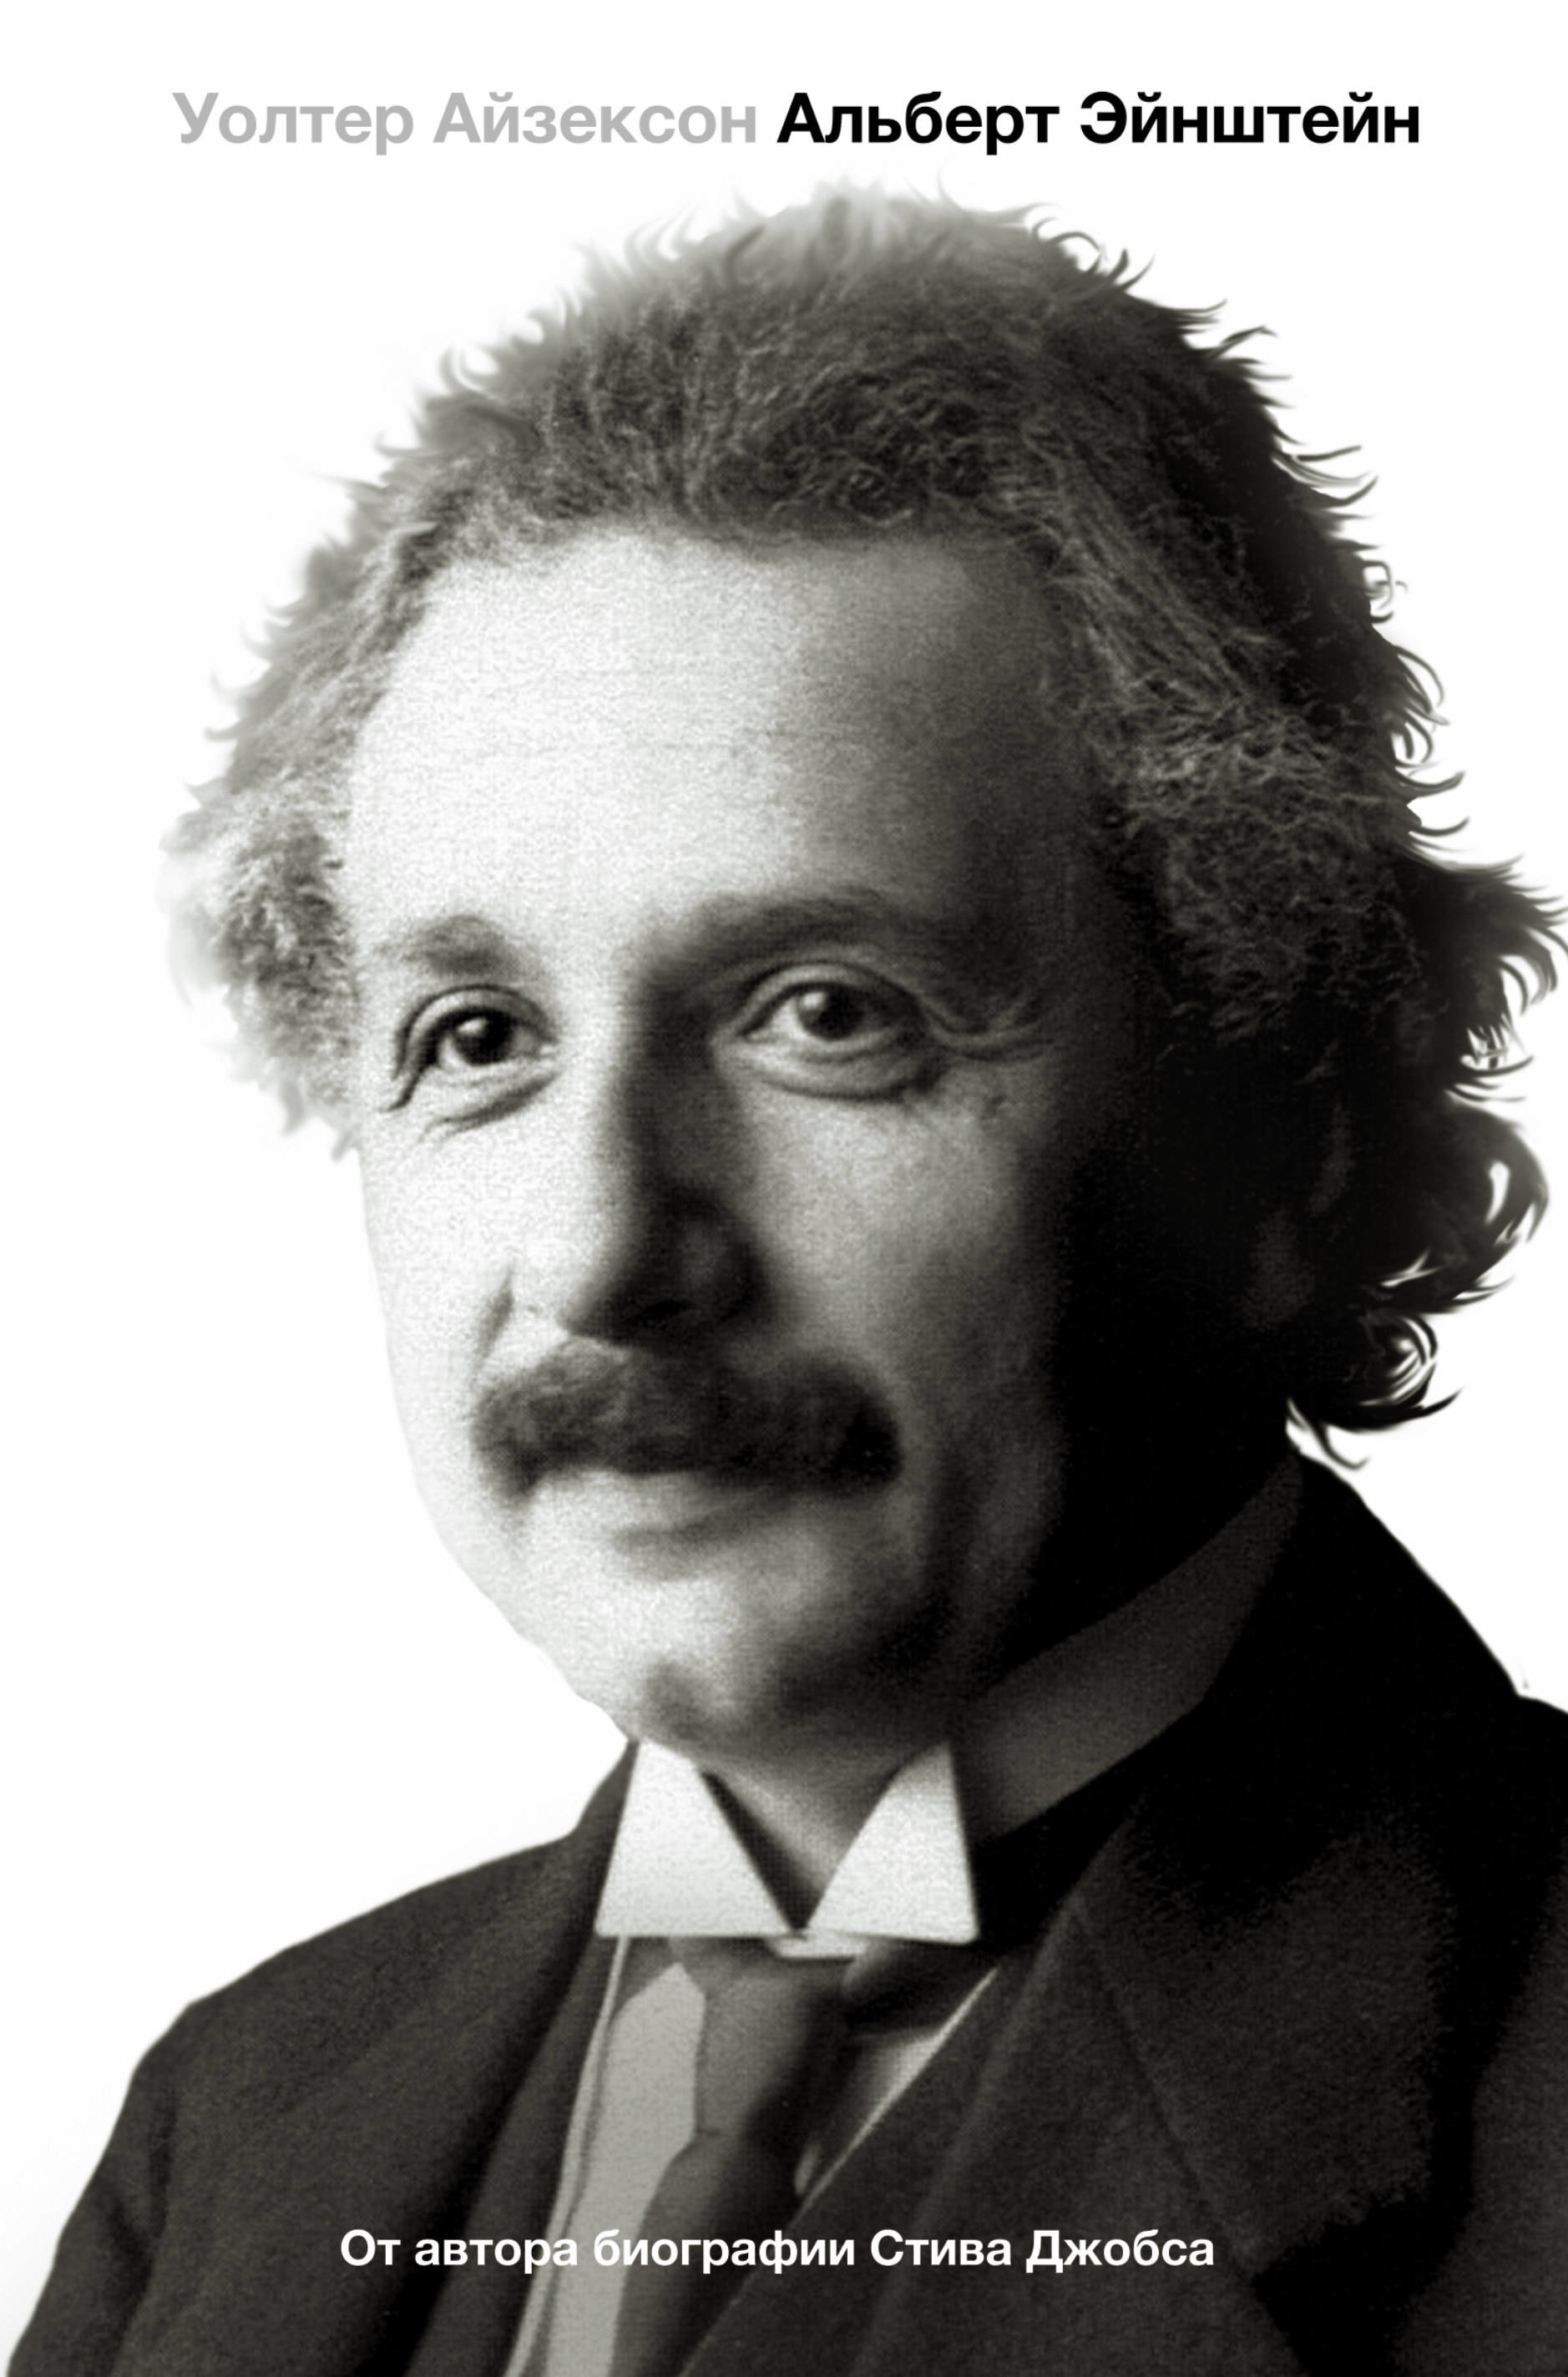 Book “Альберт Эйнштейн. Его жизнь и его Вселенная” by Уолтер Айзексон — September 30, 2019